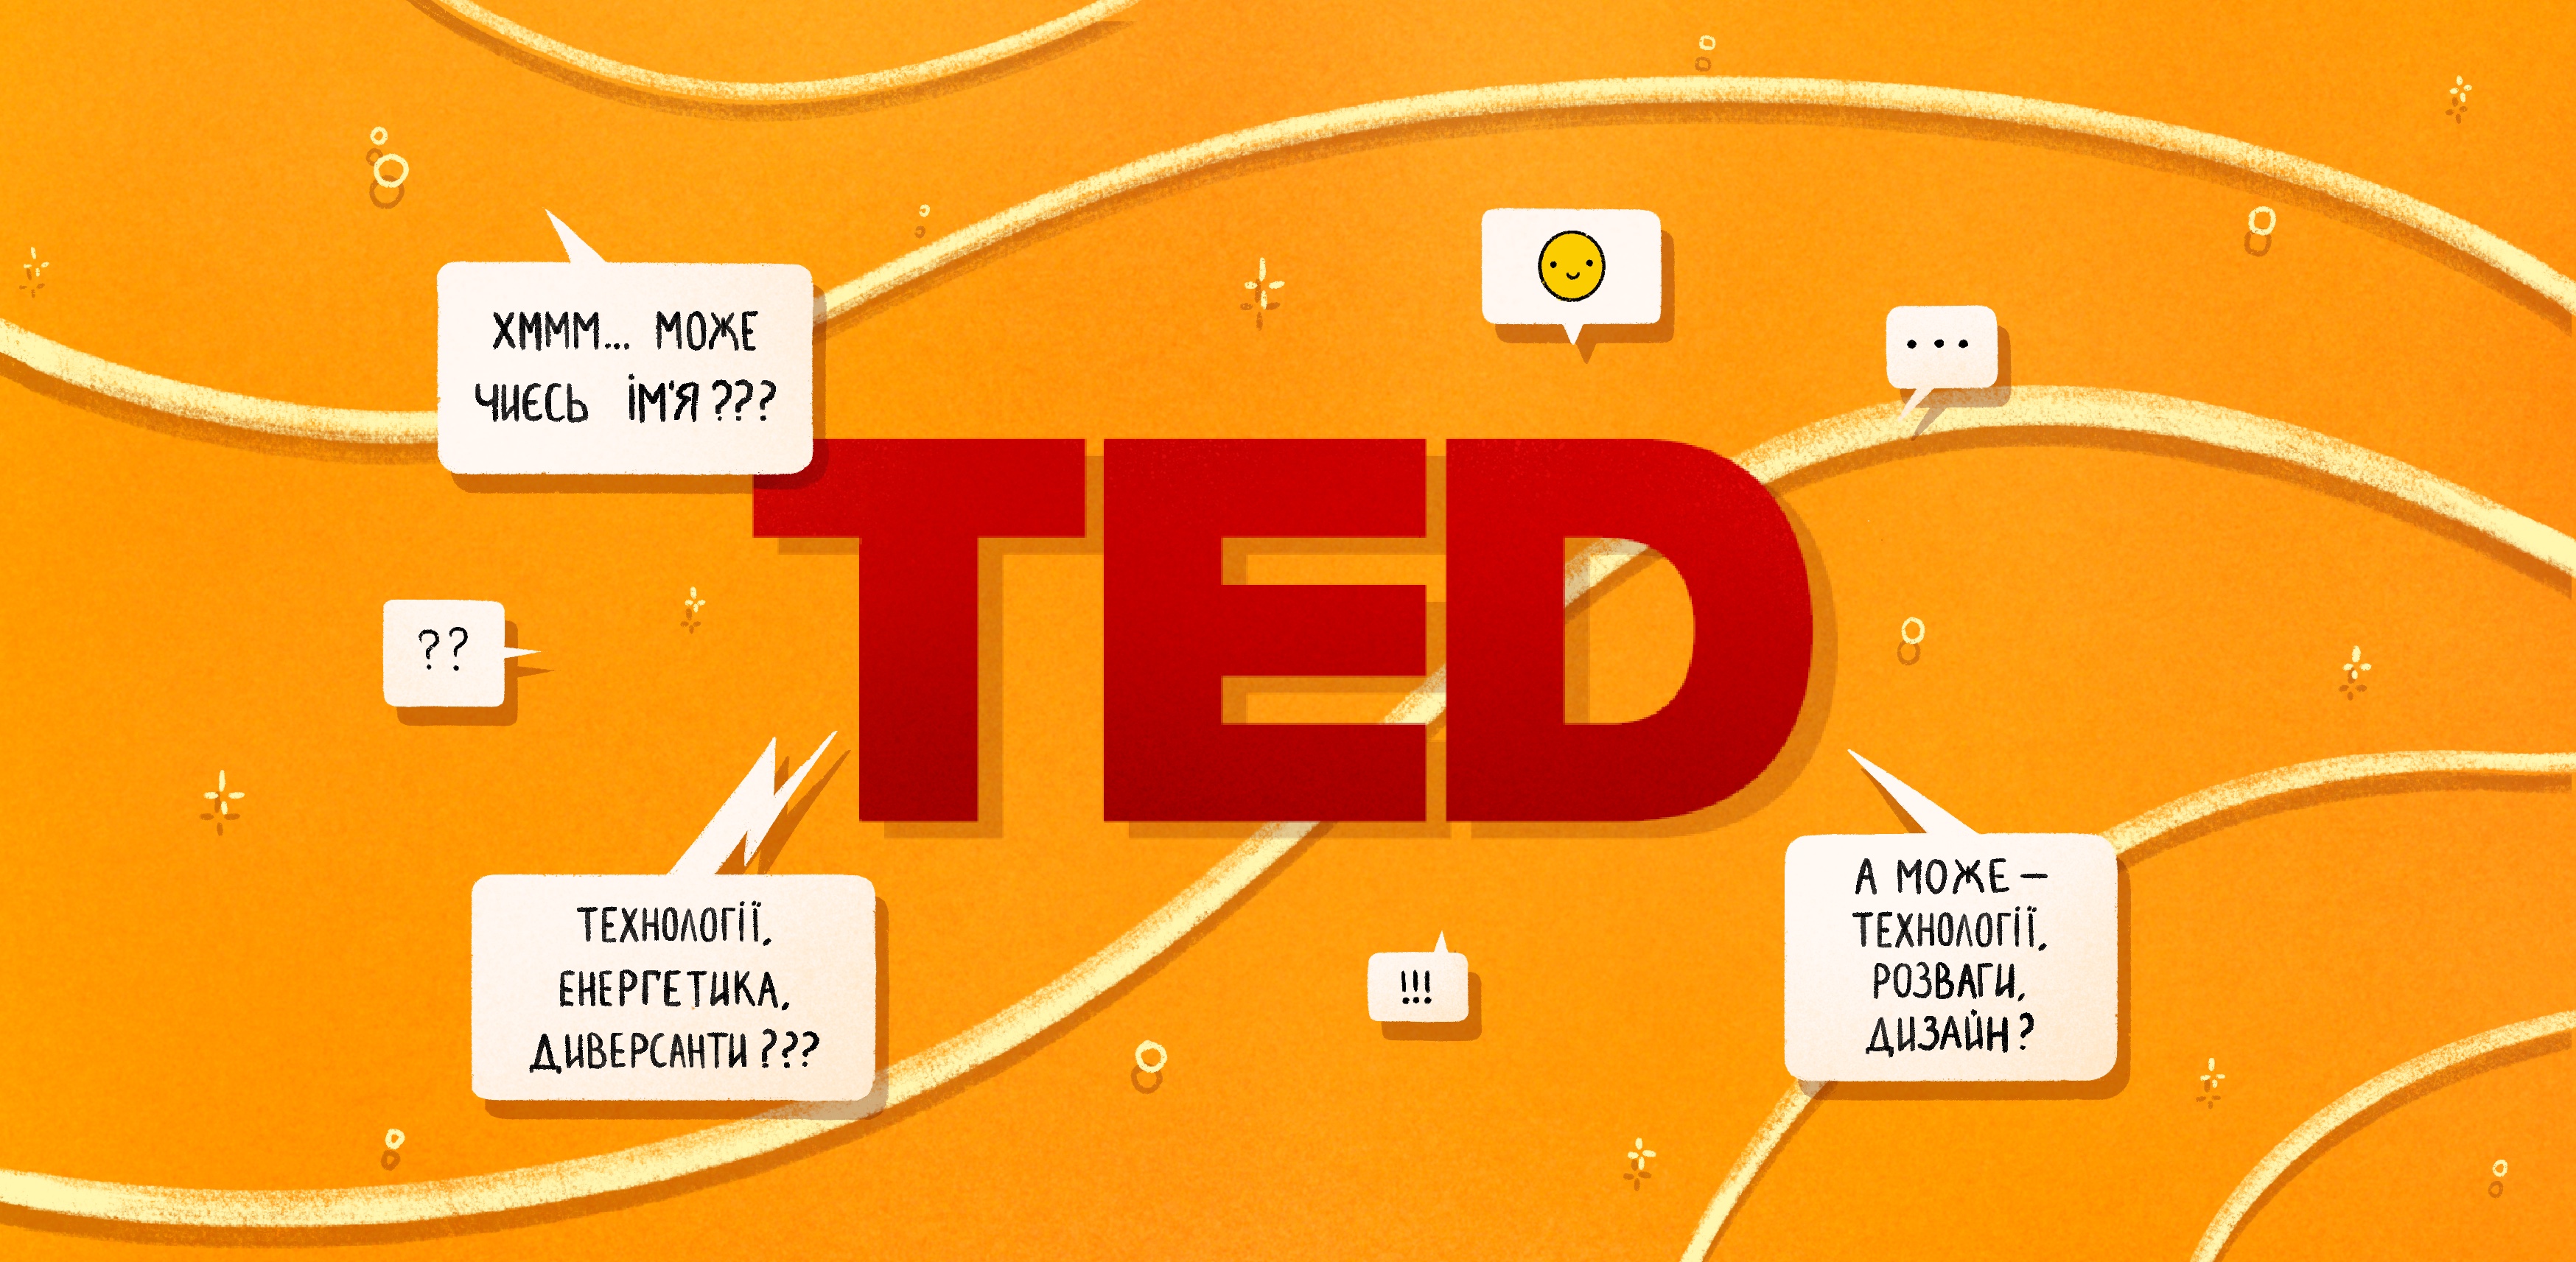 Почнемо одразу з найскладнішого питання. Як розшифровується TED?